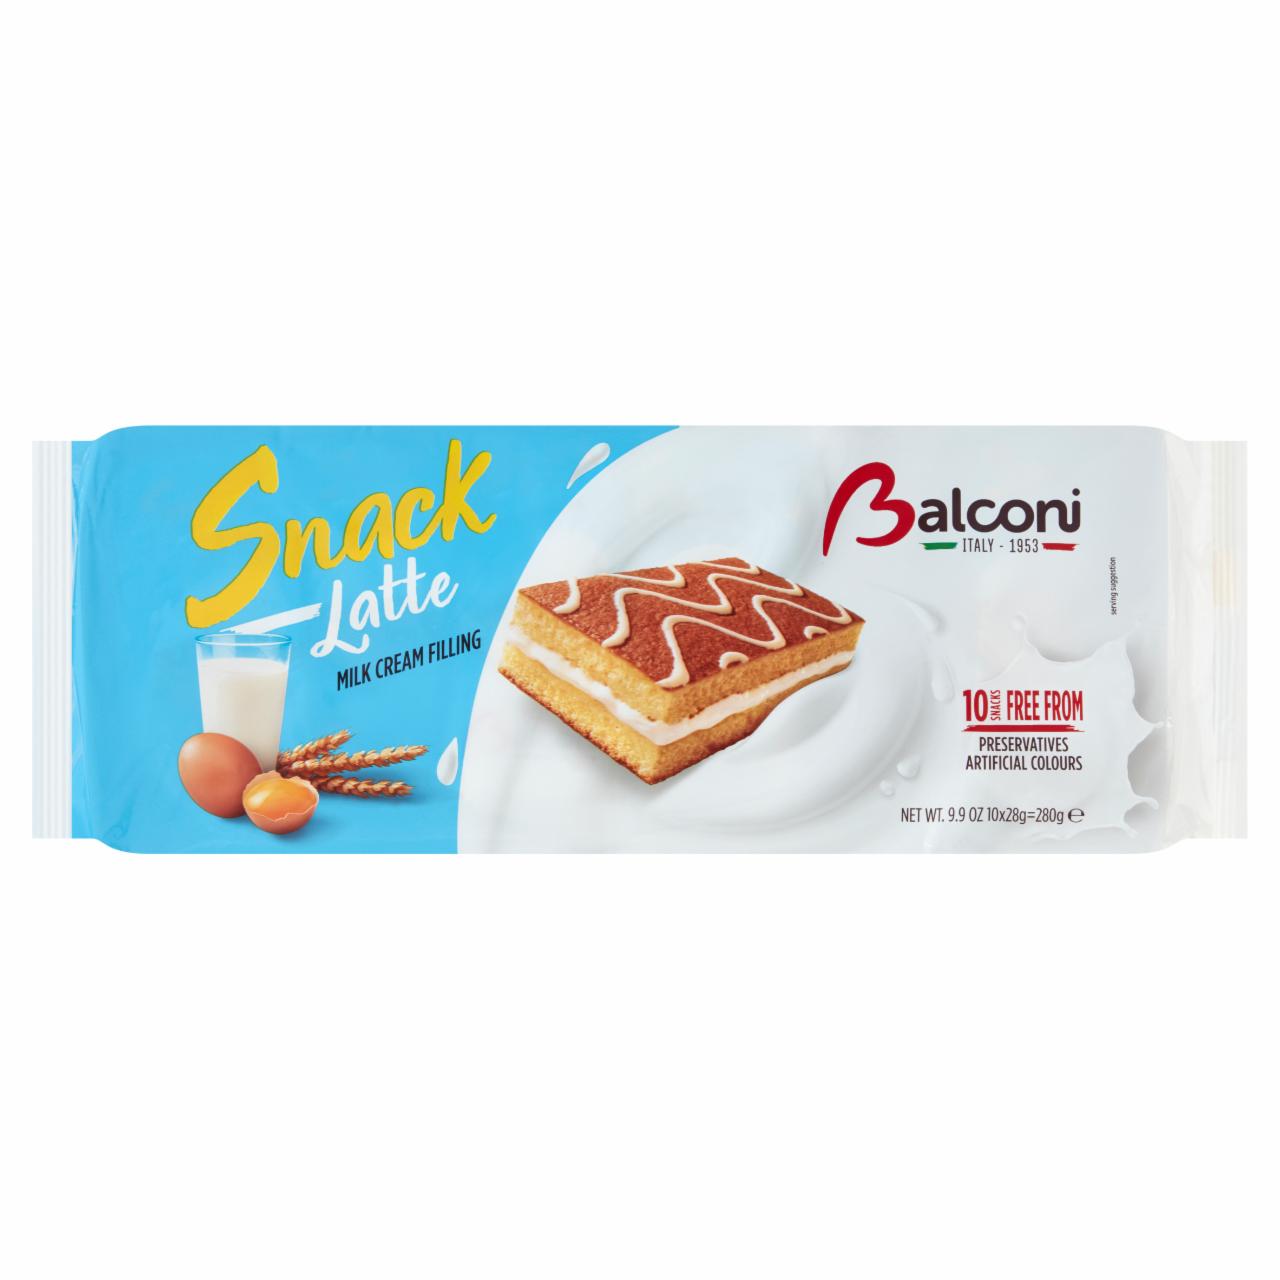 Képek - Balconi Snack Latte édes sütőipari termék tejes töltelékkel 10 x 28 g (280 g)